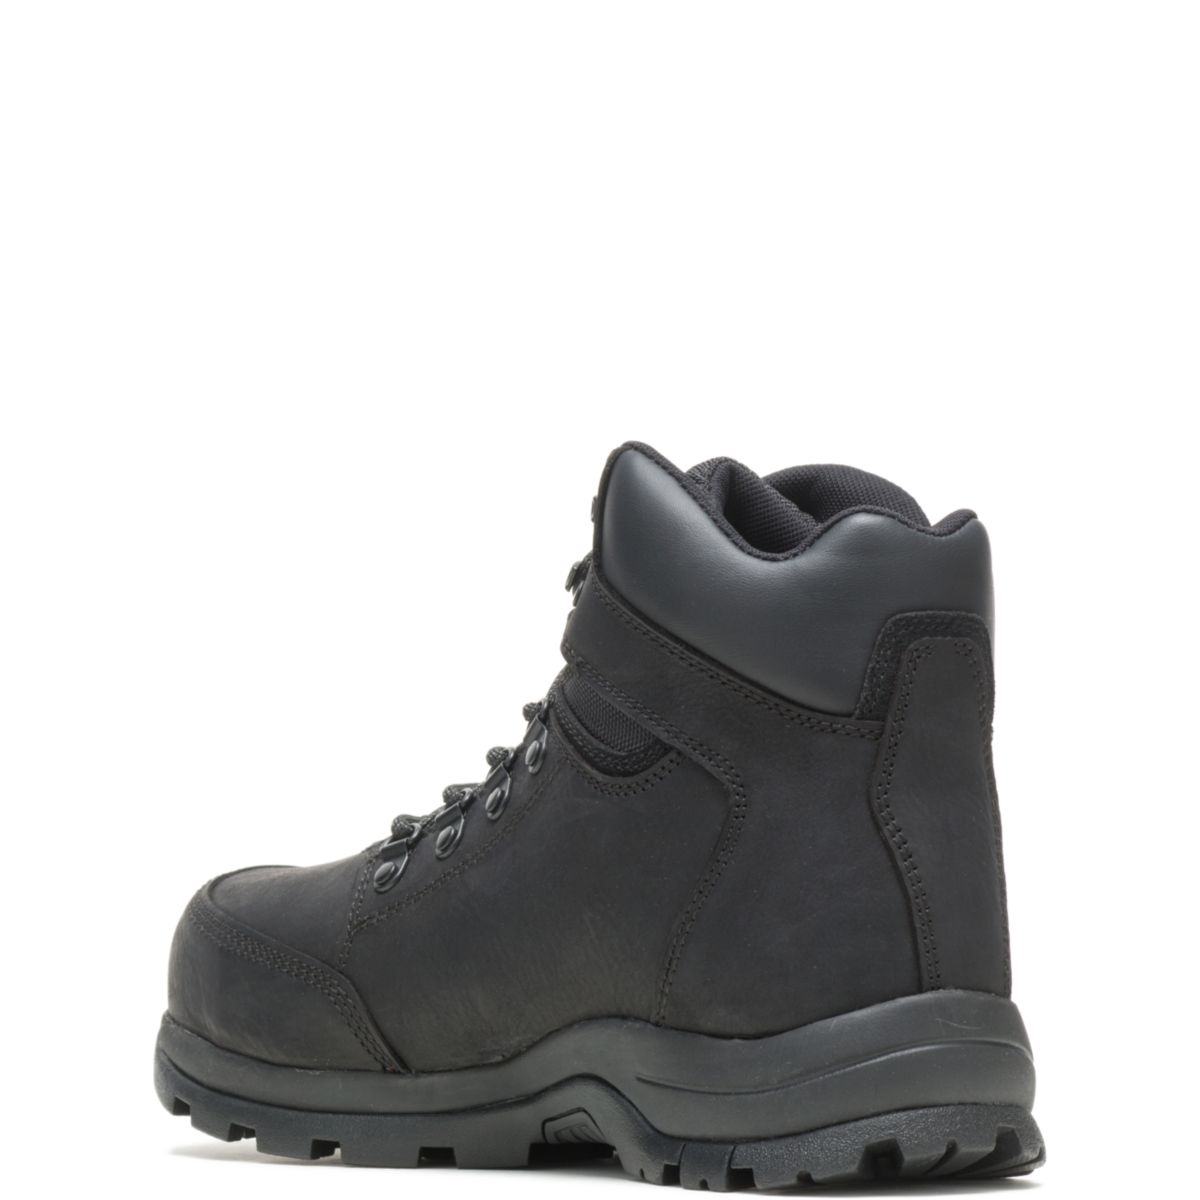 WOLVERINE Men's Grayson Steel Toe Waterproof Work Boot Black - W211042 BLACK - BLACK, 9.5